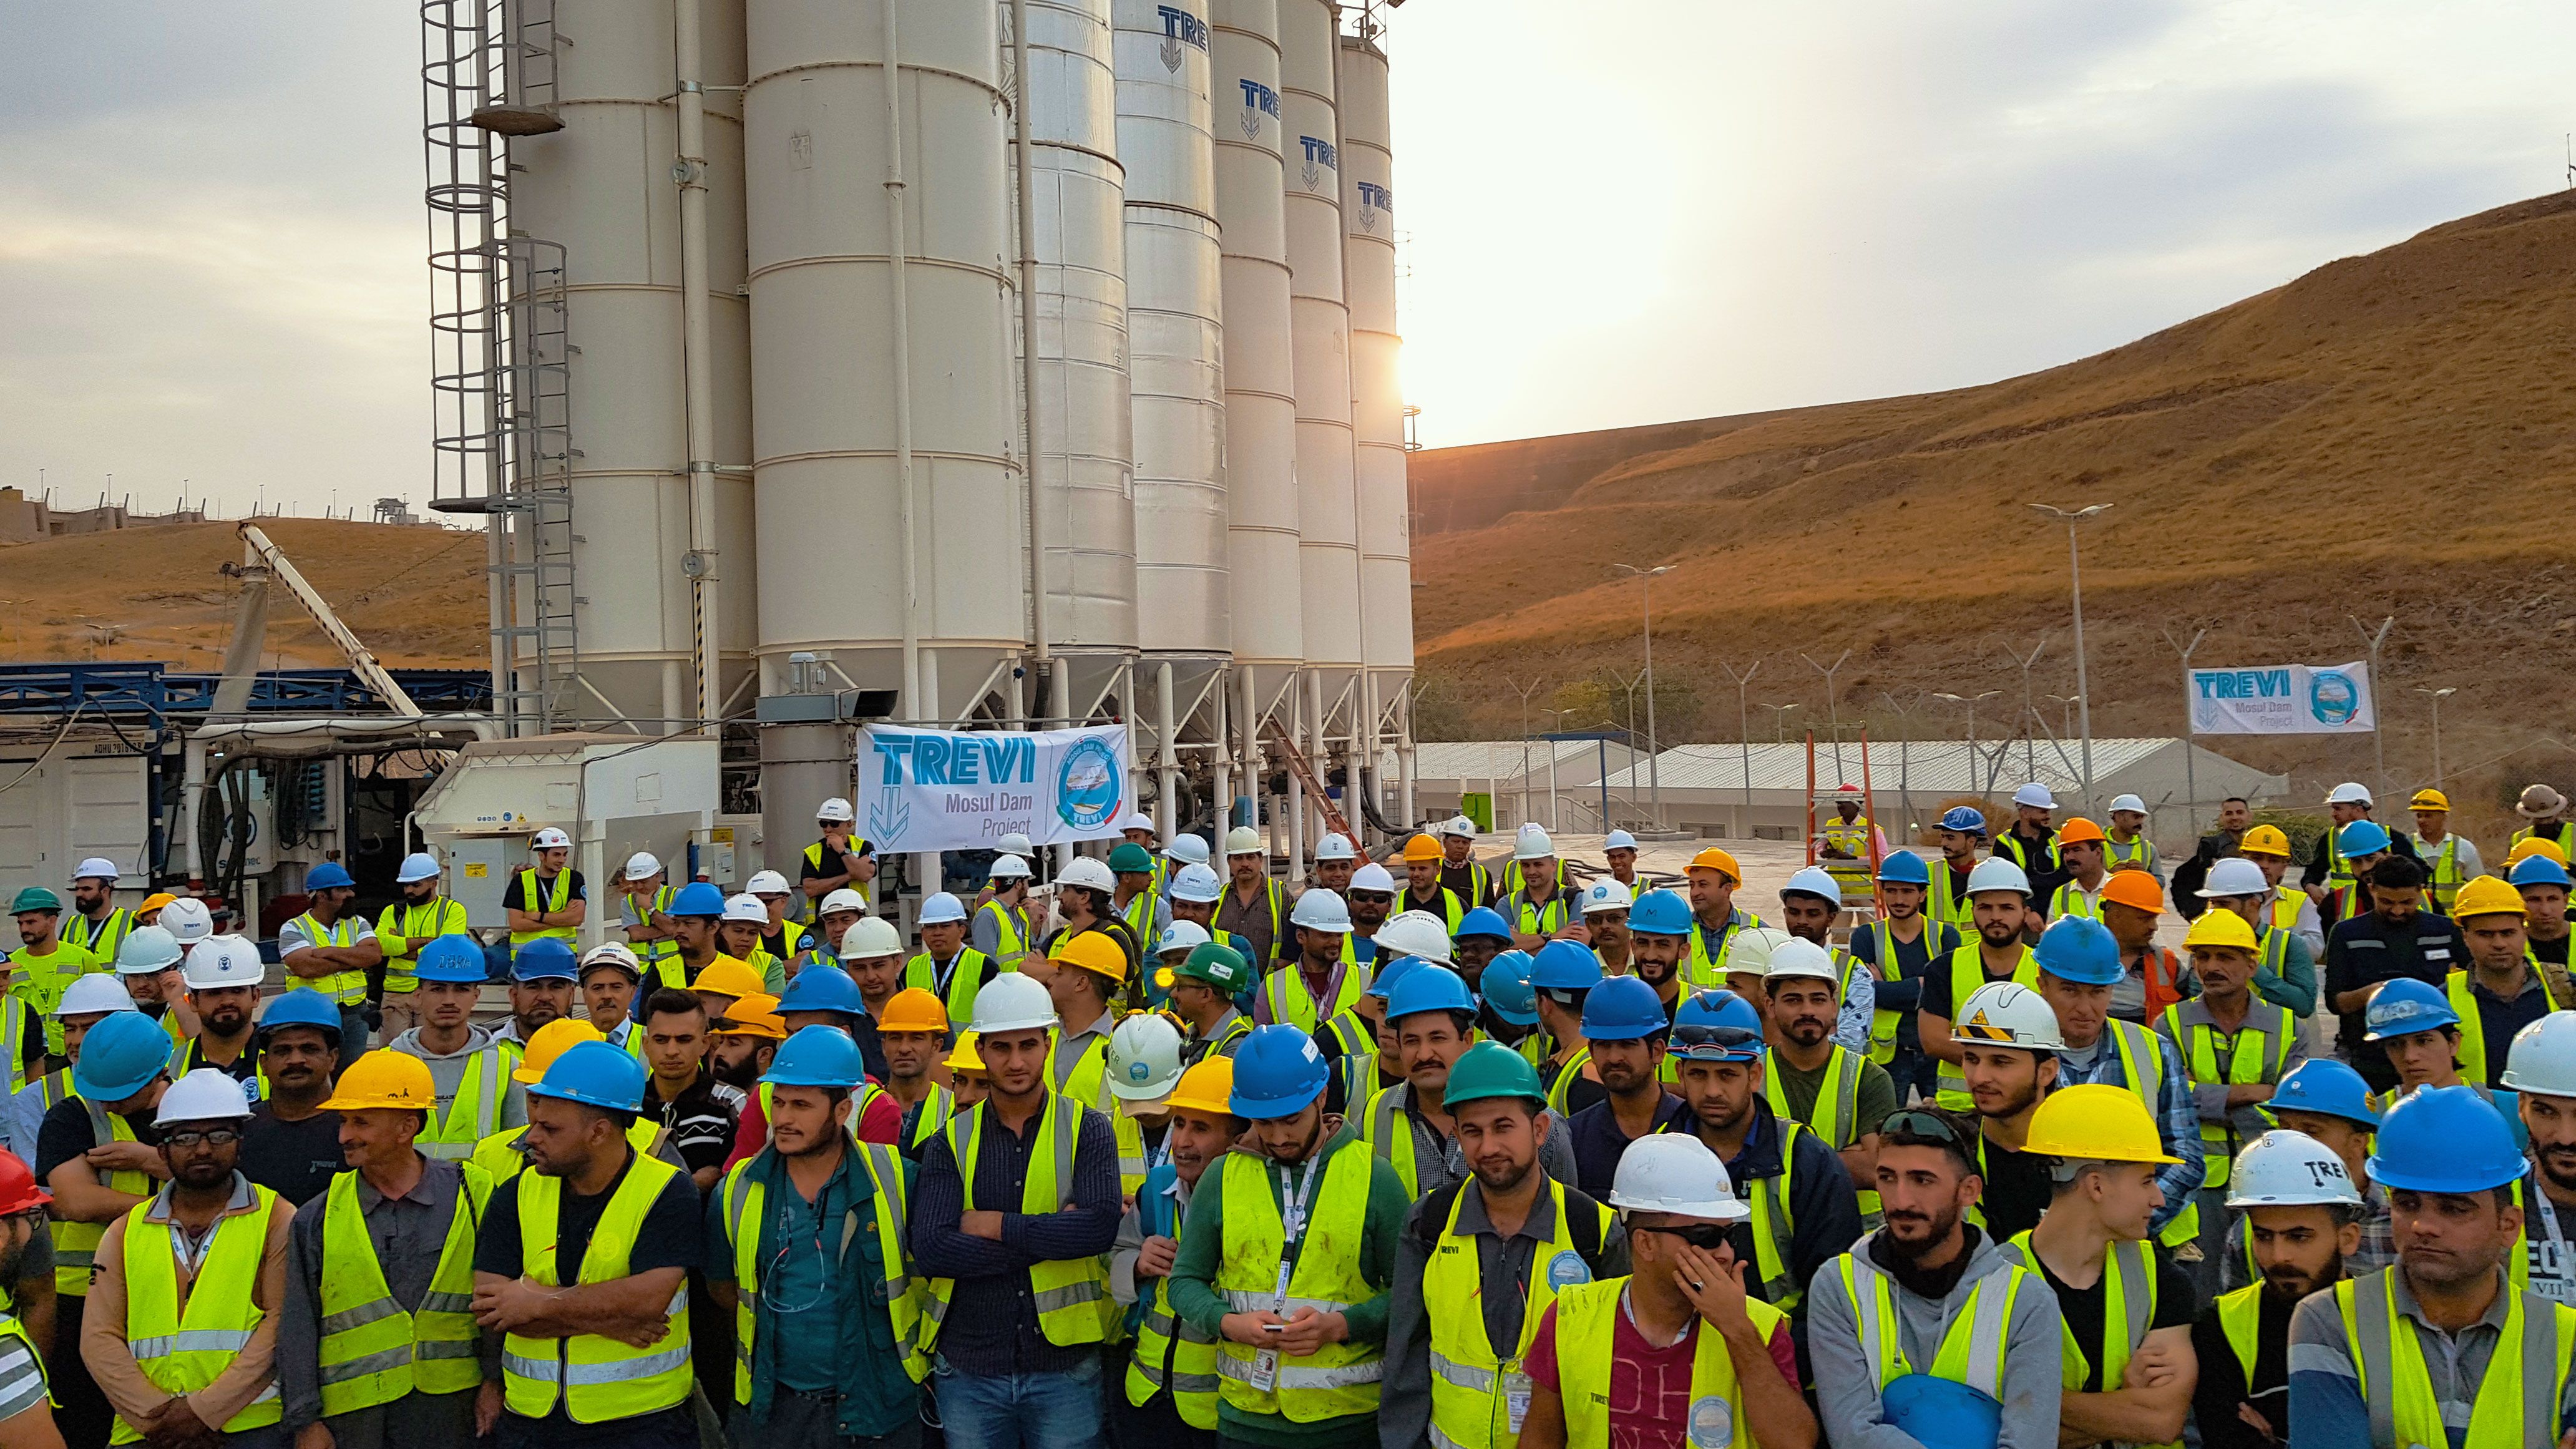 Mosul Dam, 5 milioni di ore lavorate senza incidenti | Trevi 2